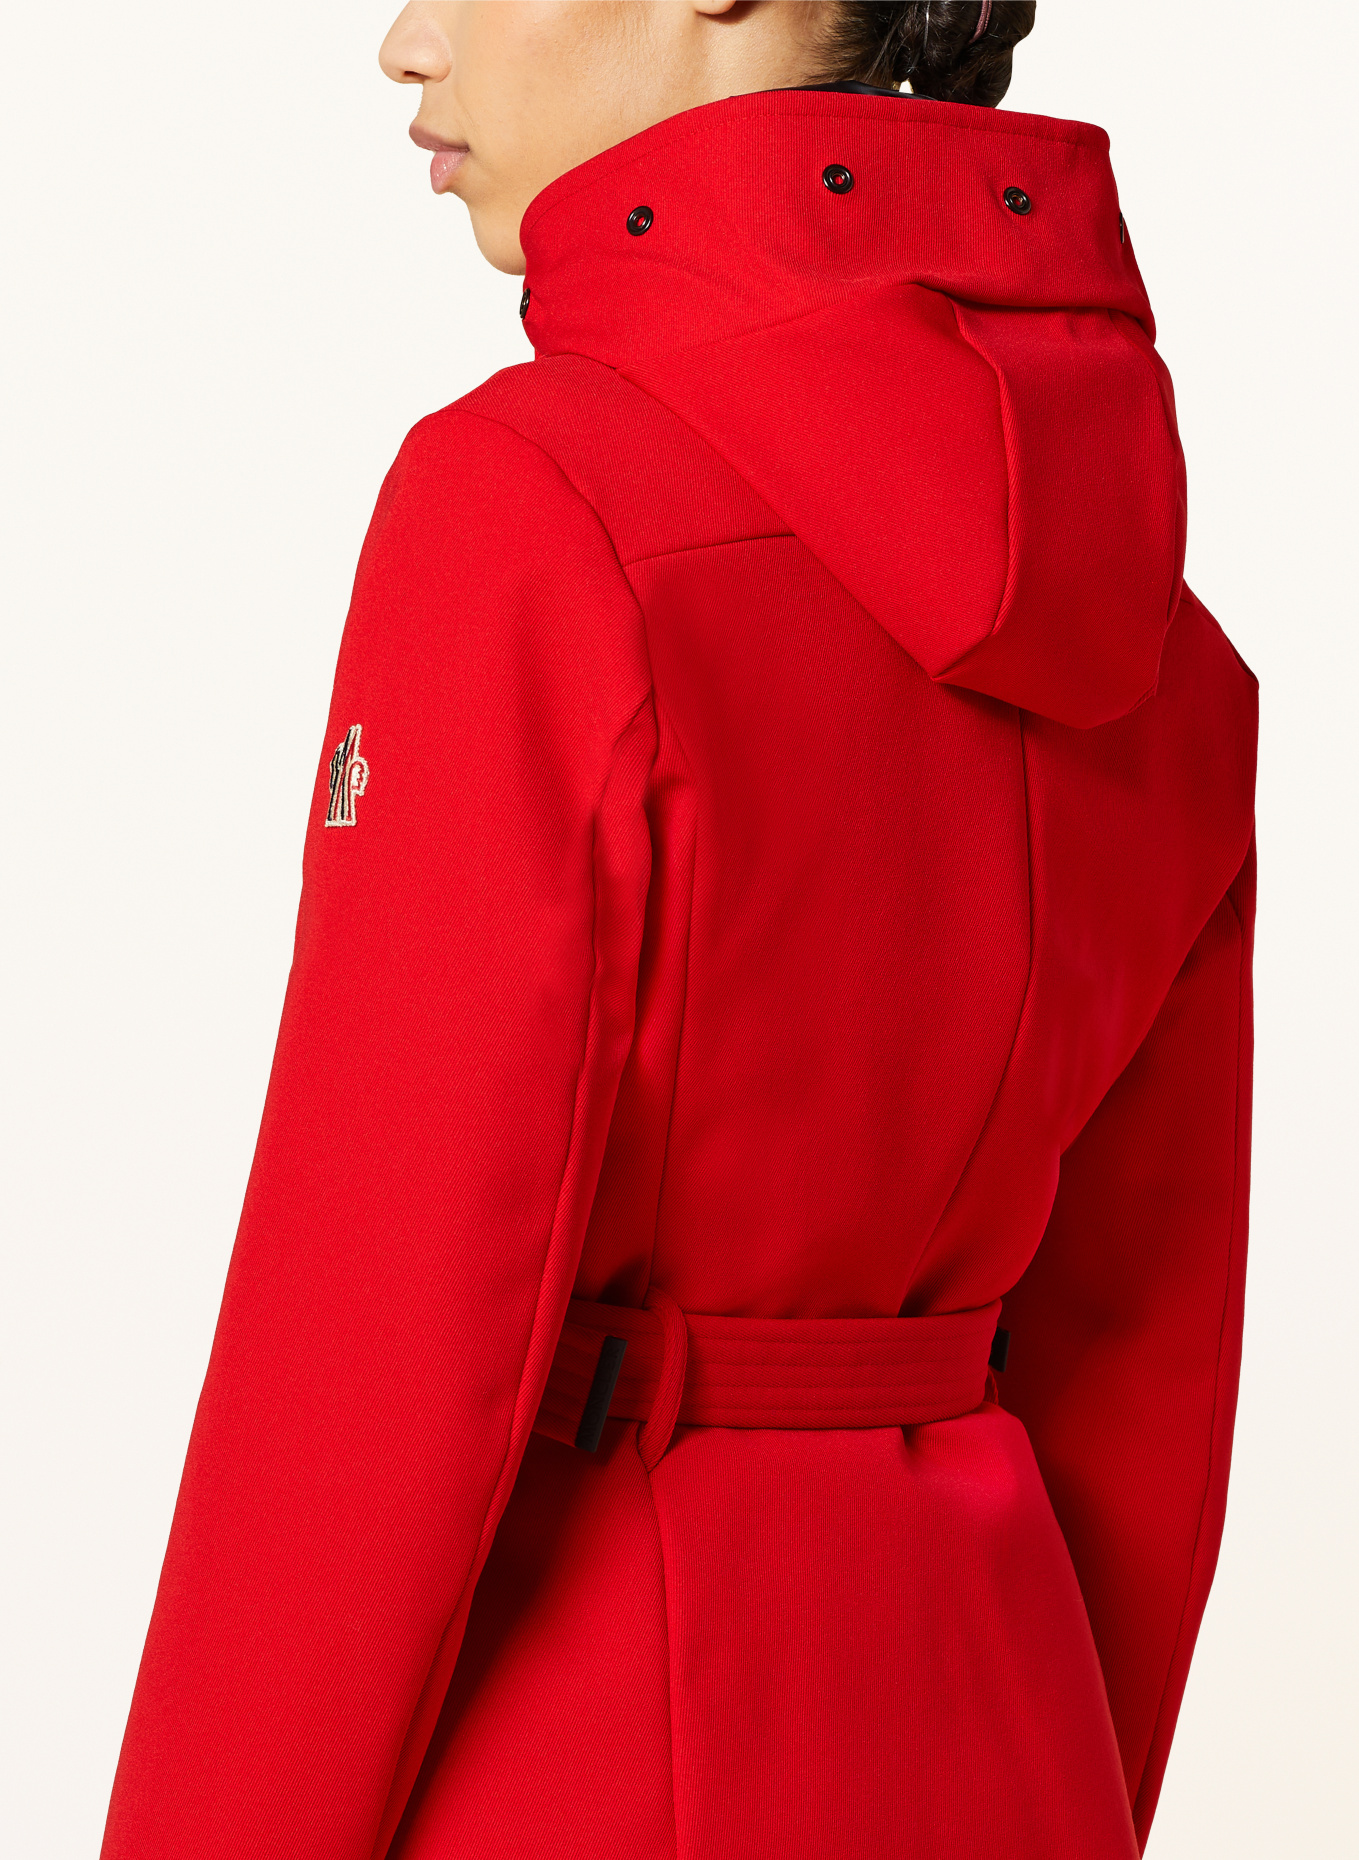 MONCLER GRENOBLE Ski jacket, Color: RED (Image 5)